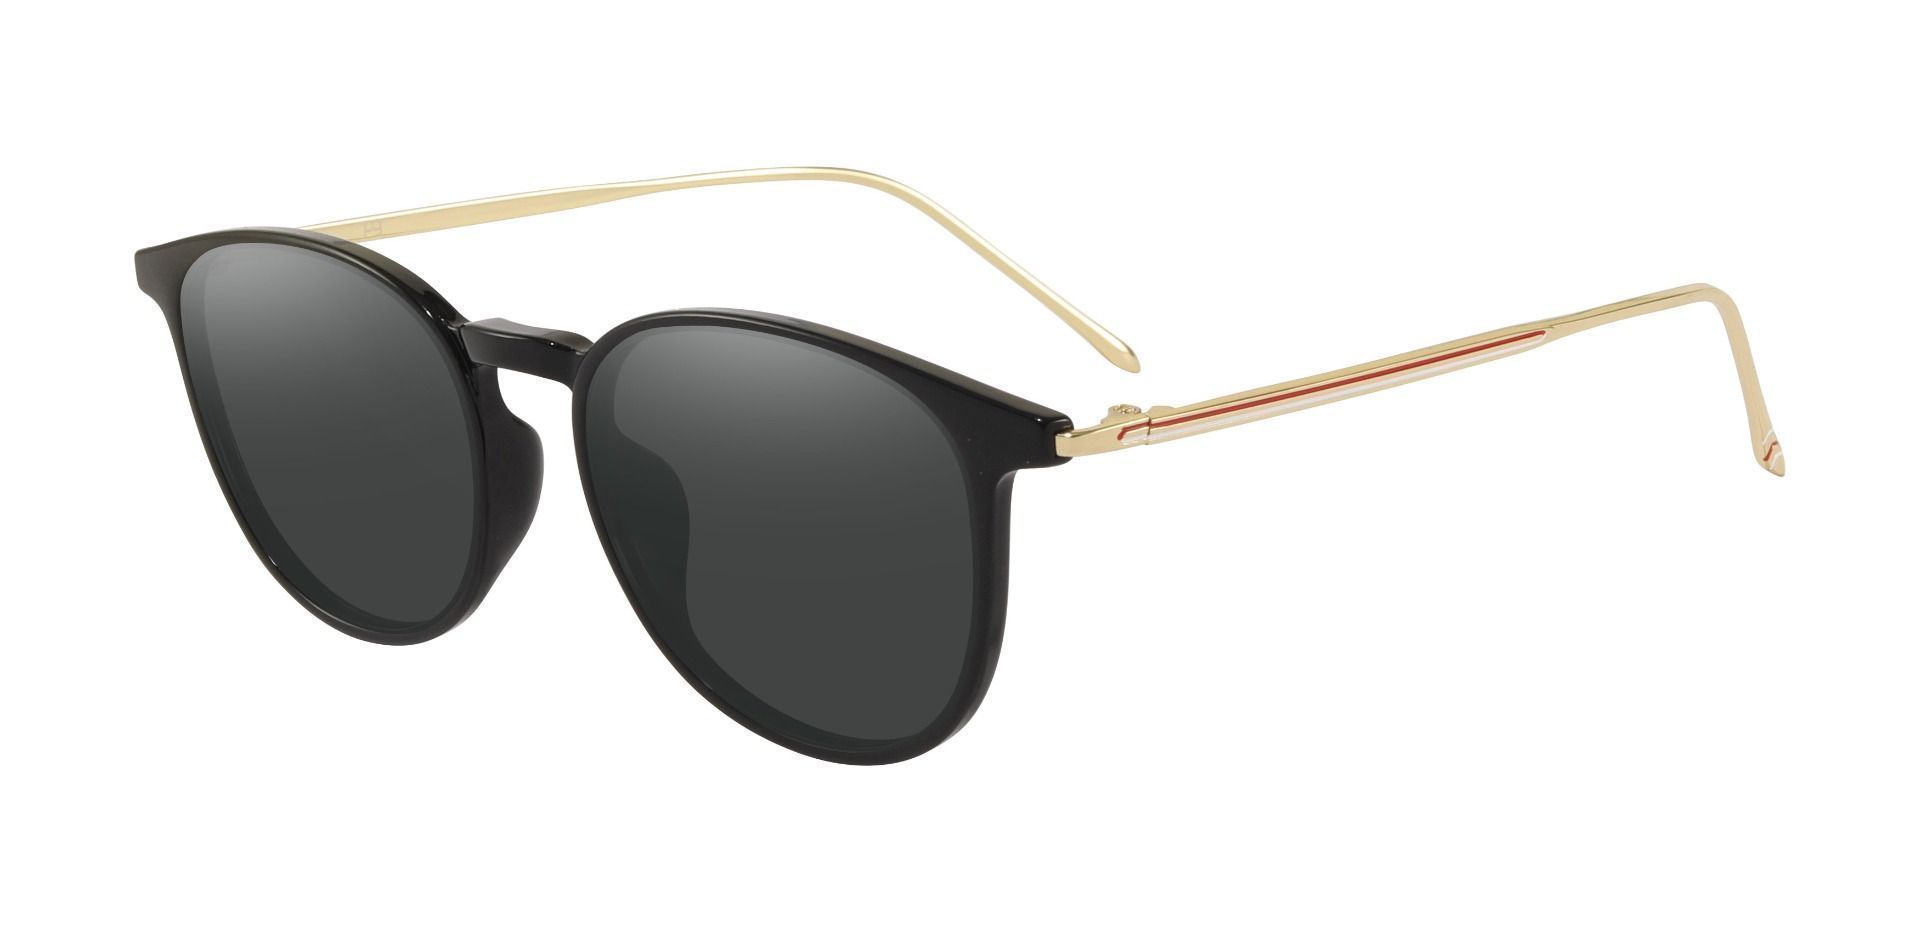 Elliott Round Progressive Sunglasses - Black Frame With Gray Lenses